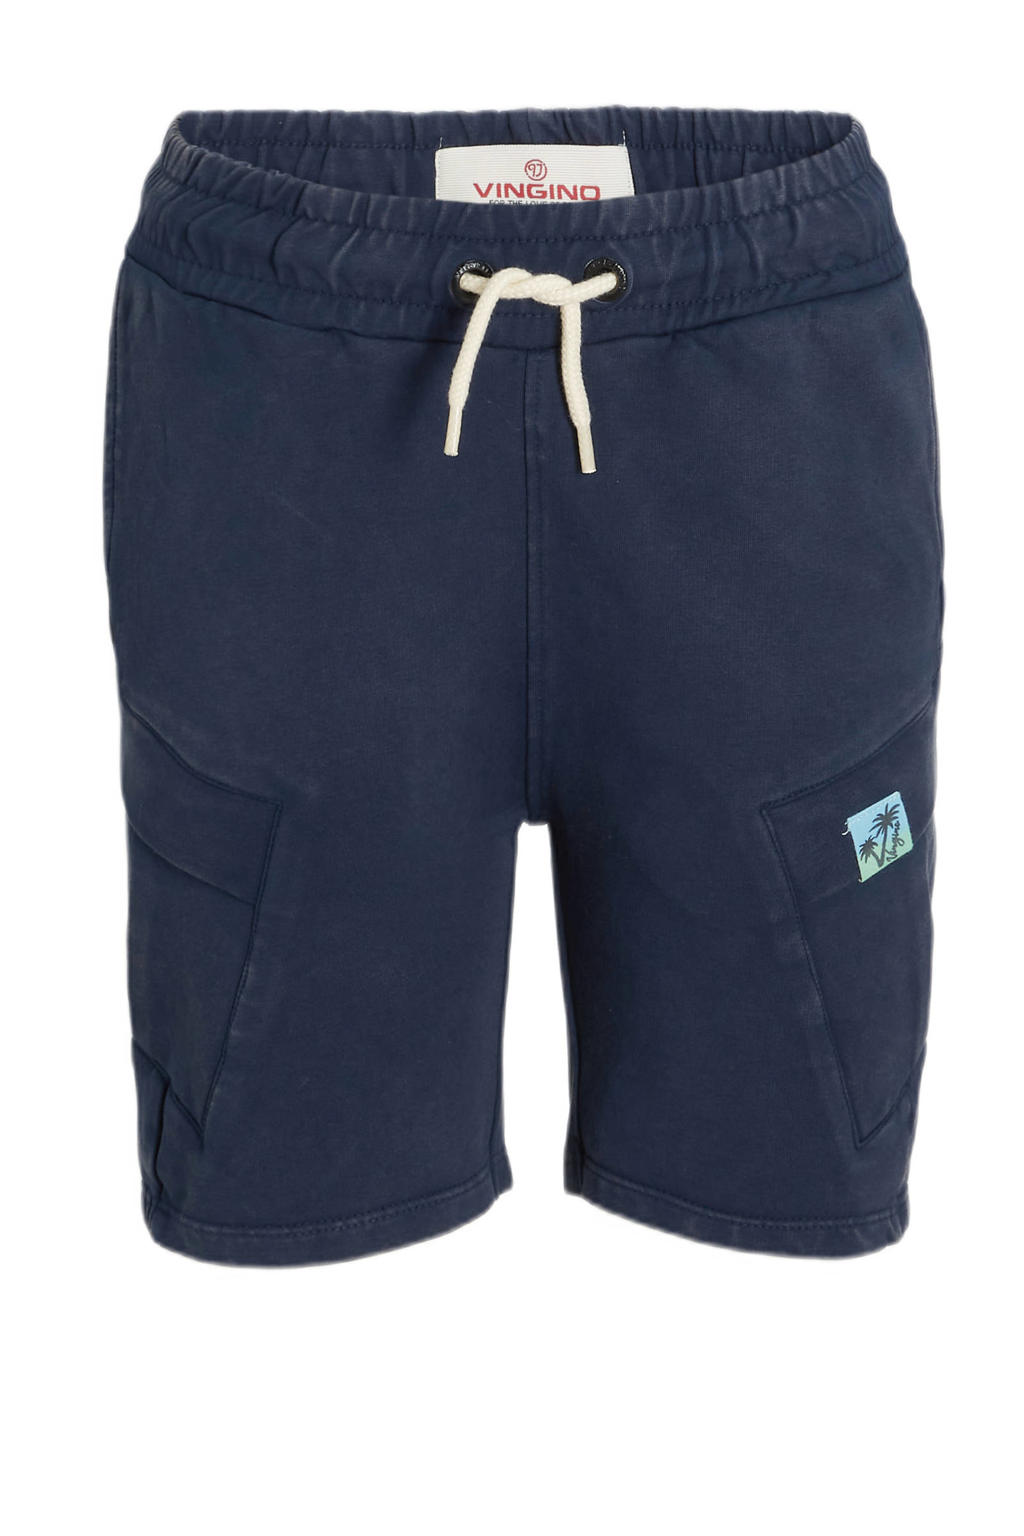 Blauwe jongens Vingino cargo short van sweat materiaal met regular waist en elastische tailleband met koord